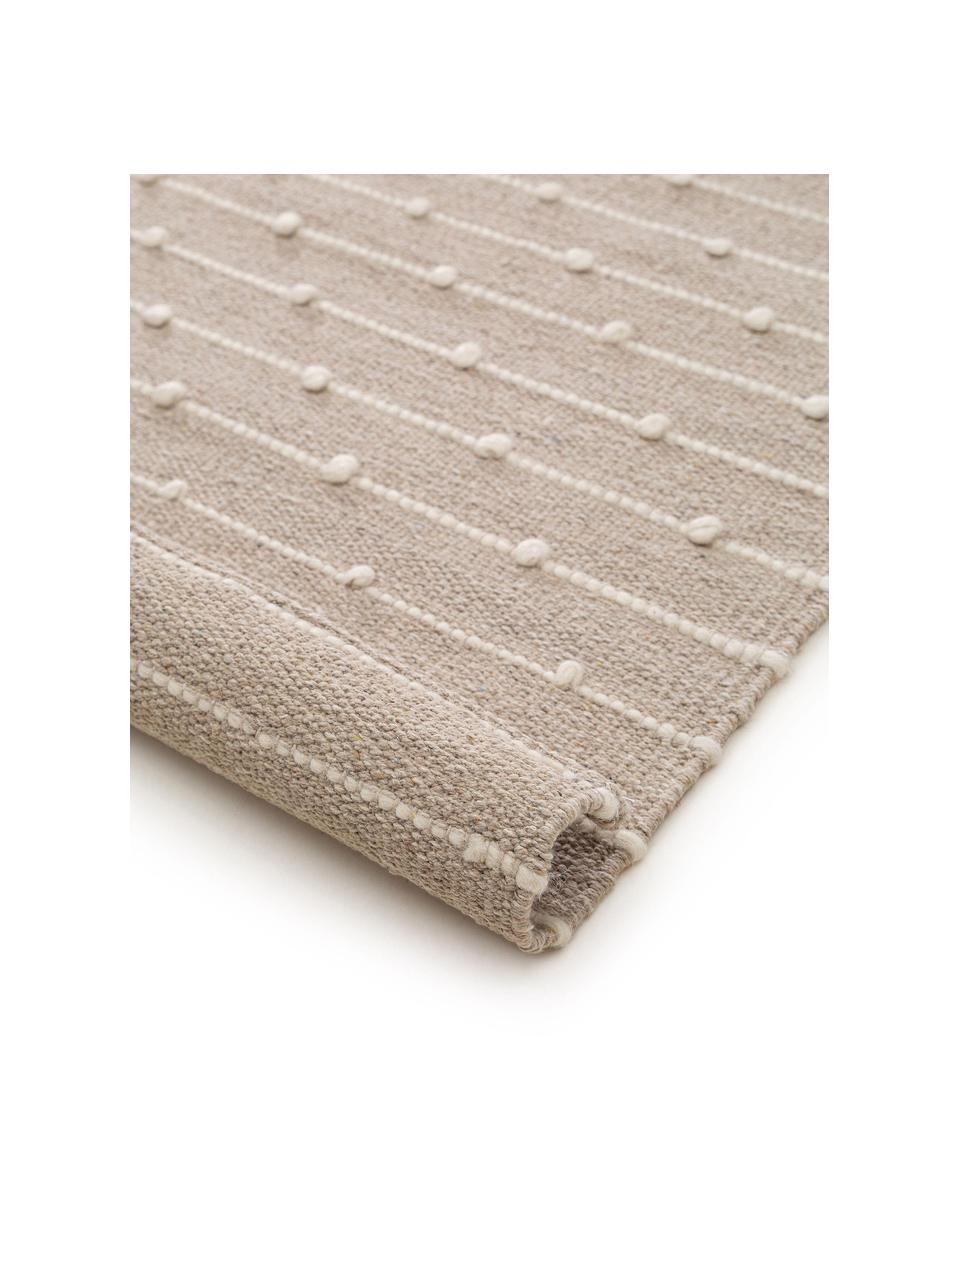 Handgewebter Baumwollteppich Lupo in Beige/Creme, 80% Baumwolle, 20% Wolle, Beige, B 160 x L 230 cm (Größe M)